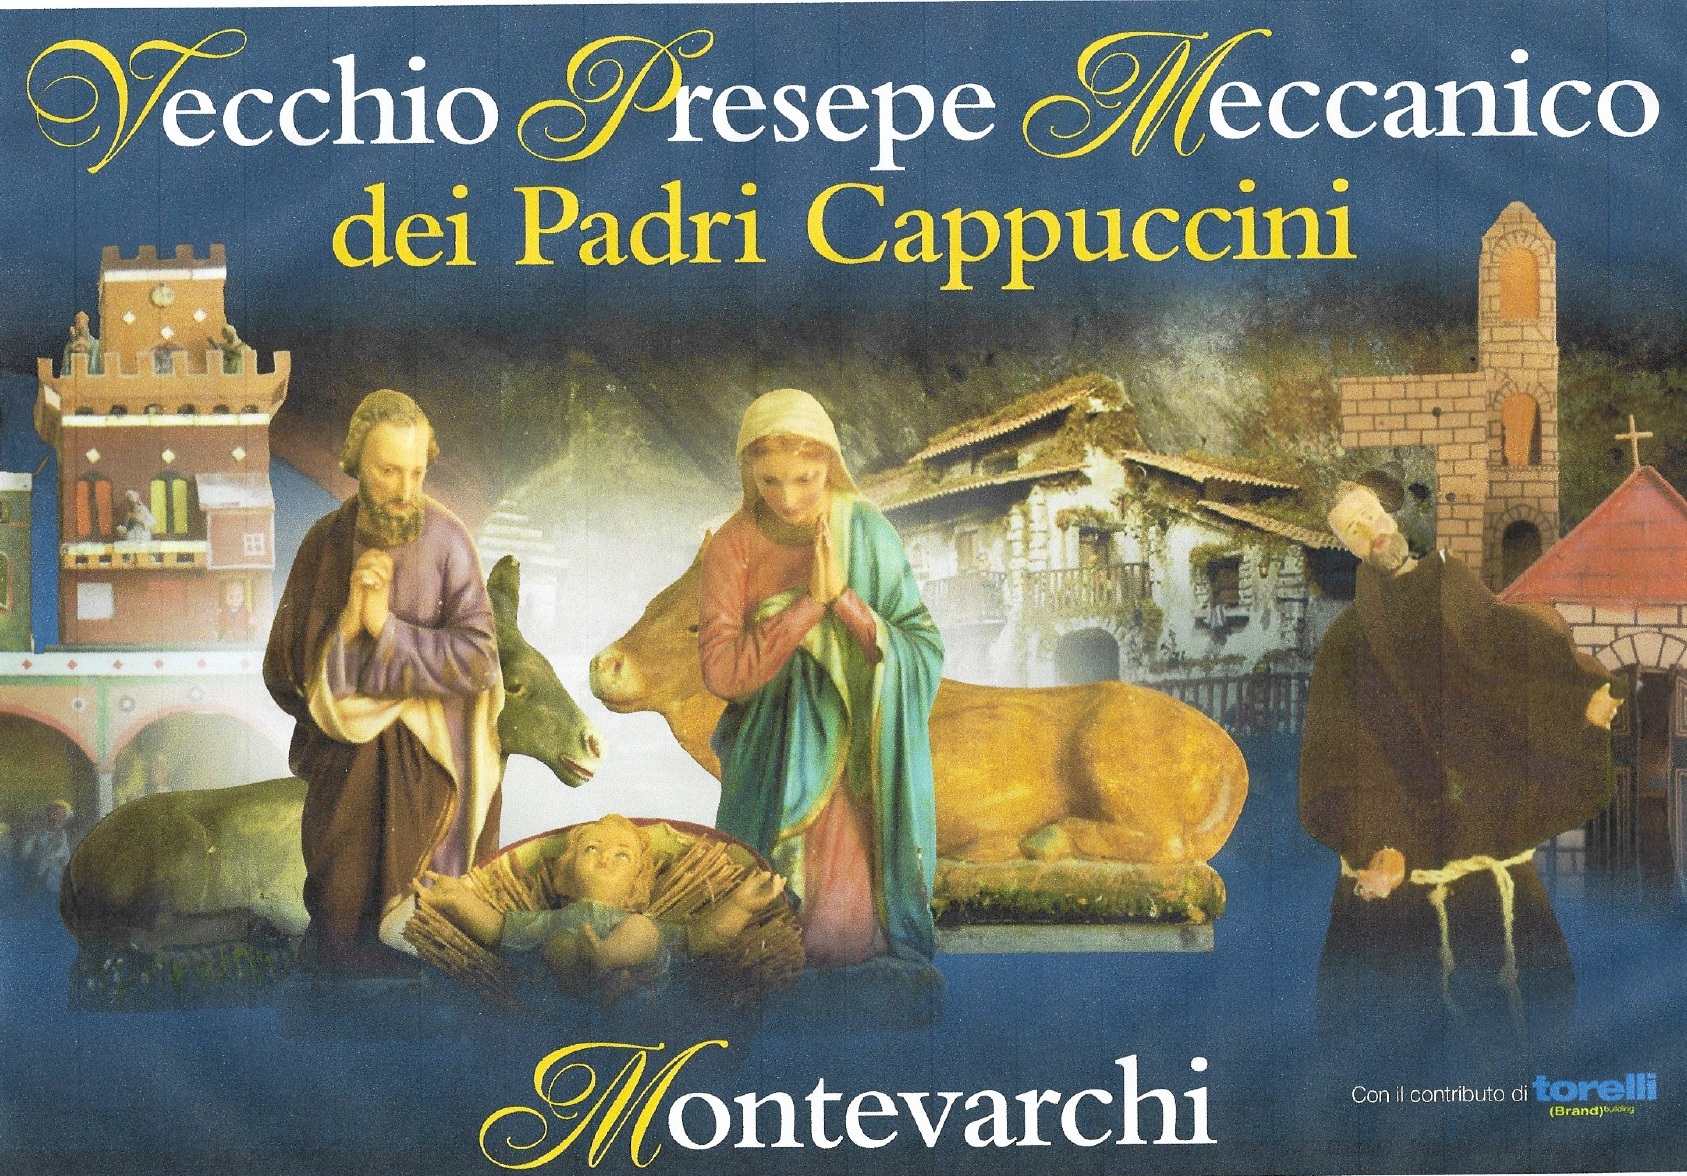 Montevarchi: aperto al pubblico il vecchio presepe meccanico dei padri Cappuccini